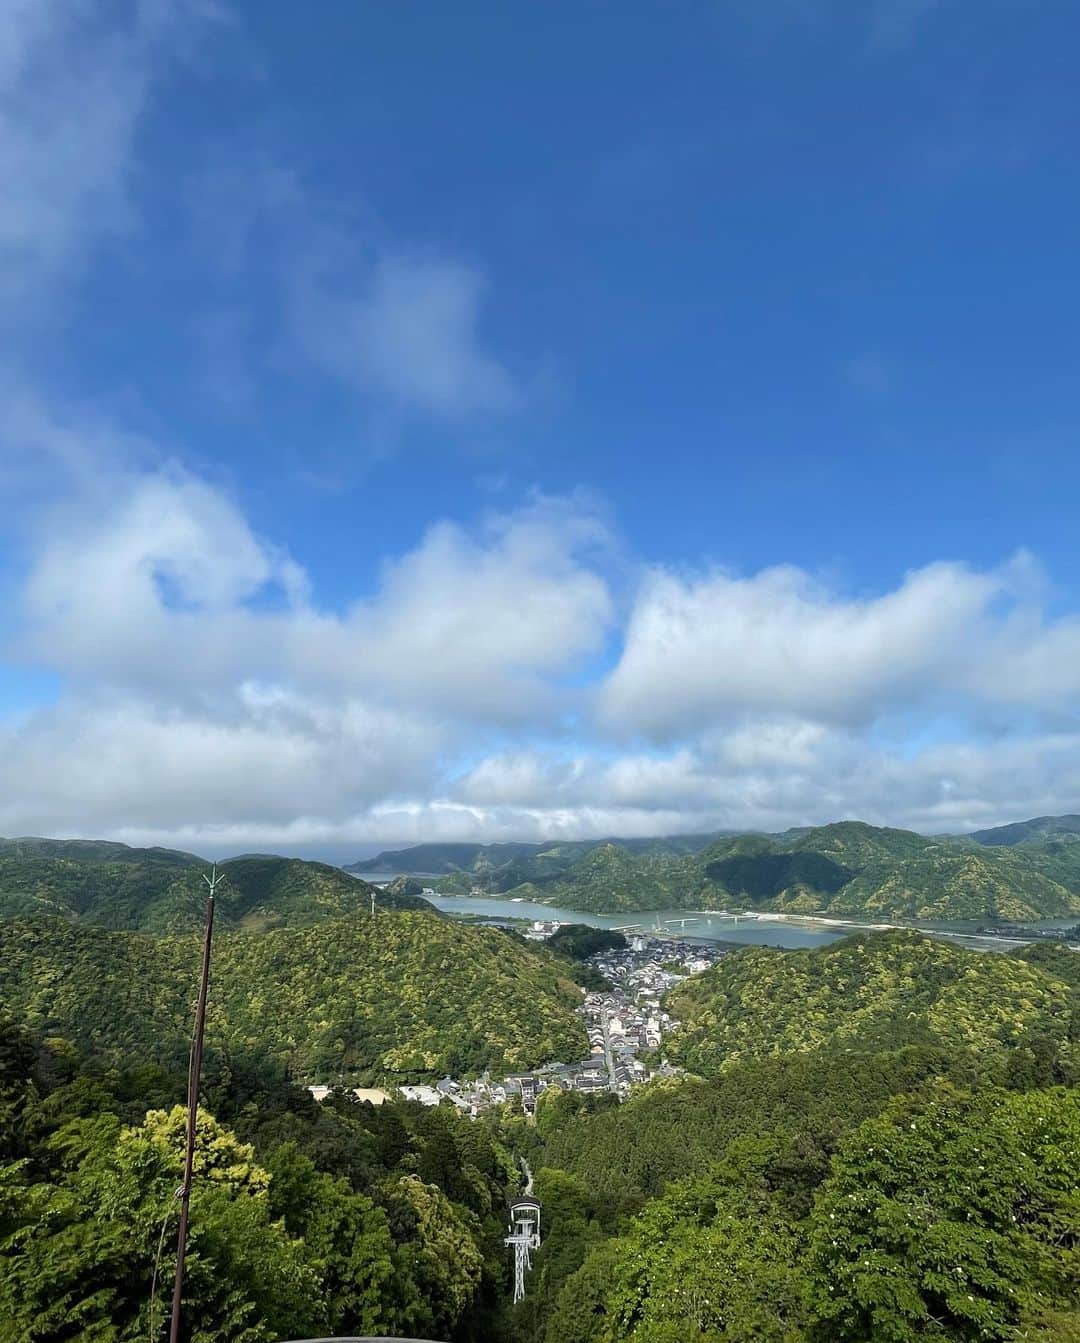 光永亮太さんのインスタグラム写真 - (光永亮太Instagram)「FM COCOLO「MOVE ON SATURDAY」内の「赤い風船 TRAVEL UPDATE」。  今日は先日取材で訪れた兵庫県の城崎温泉のオススメスポットをご紹介しました！  初めて訪れた城崎温泉。風情と情緒に溢れていて、それはそれは素晴らしい場所だったのですが、今週と来週はその城崎温泉の魅力をたっぷりとお届けできればと思っております！今週は城崎温泉のオススメスポットをご紹介！     大阪駅から特急こうのとりに乗って城崎温泉までは2時間40分くらい。豊岡駅を過ぎたあたりで右手に円山川が見えてきます。日本の原風景が広がってきて、心は既にワクワク。     先ず向かったのが城崎温泉ロープウェイ。麓の山麓駅から温泉寺駅という中間駅を経由して山頂までロープウェイで約7分。往復で大人1人¥1,200。展望台に着くとそこは天国。正面には日本海と丹後半島、その丹後半島の手前を流れる円山川、そしてその円山川へと続く城崎温泉街を一度に眺めることができます。  海、山、川、温泉を一度に眺められる場所はそうそうないのではないでしょうか？この山頂からの景色はミシュラングリーンガイドで一つ星を獲得しているだけあって、外国の方も多く訪れていました。何よりも風が心地よく吹いていて、思わず大きく深呼吸。身体の隅々までマイナスイオンが流れていくのを実感します。     しばらく山頂からの眺めを堪能した後に訪れたのは同じく山頂にあるお大師様の横にある「かわらけ投げ」。「かわらけ」とは土器で作られた3枚の小さなお皿のようなもののことで、これを高台から投げることで厄払いになるとのこと。まずはかわらけを買います。こちら、3枚で200円。まずは奥の弘法大師様に向けてお参り。その後、かわらけ投げをします。投げる場所から数メートル先には赤い小さな的があって、その的に3枚のうちの1枚でもかわらけを当てると一願成就するというもの。スタッフが次々と失敗する中（笑）、光永が投じた2投目！なんと赤い的の右上に命中！！これには現場も大盛り上がり！！成功した僕の経験でちょっとしたアドバイス！「サイドスローで腕を振って思いっきり投げる！」がコツです（笑）。これは楽しかったなぁ…     その後、山頂の「みはらしカフェ」で、眼下に広がるパノラマを前にコーヒー休憩。そよ風に吹かれながらいただいたエスプレッソは格別でした。城崎温泉に着いたら真っ先に山頂を訪れることをオススメします！  日中のうちに訪れておきたい城崎温泉のオススメスポットをもう二つほど！一つ目の場所は城崎温泉駅からタクシーで北に約15分「城崎マリンワールド」。日本海に面した城崎マリンワールドは、水族館以上を目指す、見て、さわって、発見できる体験型水族館。イルカ・アシカショーをはじめとした10のライブショーや、アジを釣って食べられる体験など、ここにしかない魅力が満載です。特に印象的だったのが「イルカ・アシカショー」。その名の通り、イルカとアシカのショーを同時に見られるというもの。そしてペンギンのお散歩。こちらも名前の通り、お散歩するペンギンを間近で見ることができます。よちよち歩く姿はむちゃくちゃ可愛いです！とにかくここの水族館は日本海に面しているだけあってロケーションが抜群！カップルで、ご夫婦で、ご家族で思う存分楽しめる水族館だと思います。     もう一つのオススメは城崎温泉駅から南へタクシーで約10分。玄武洞公園。この玄武洞は国の天然記念物。160万年前に行われた火山活動により山頂から流れ出したマグマが、冷えて固まる時に作り出した規則正しいきれいな割れ目、六角形の無数の玄武岩が積み上げられた洞窟のような絶壁のような場所。その圧巻の佇まいは不思議な美しさ！！一言で言うと、目の前に迫ってくるかのような迫力がすごい！！玄武洞公園には、5カ所の洞窟があります。僕らが行った時は残念ながらガイドさんがいらっしゃらなかったのですが、できればボランティアのガイドさんにお願いして説明を受けながら、自然と人間の手が生み出した美を堪能して欲しい！1時間もあればゆっくり楽しむことができるので、プチハイキング気分でお楽しみください！！     そして夜はもちろん城崎温泉街へ！とにかく街並みが美しいので、フォトジェニックで思わずカメラを向けたくなる場所だらけ。そんな中、ぜひ昭和レトロな遊び場に行って欲しいのです！！  射的などの懐かしい遊びが楽しめる、昭和29年創業の昔ながらの遊技場、谷口屋遊技場。射的は12回で500円。人形を倒した数に合わせて商品をくれます。これにはスタッフたちと大盛り上がり！    城崎温泉は子供や学生はもちろん、我々大人も童心に返って心から楽しめる本当に素敵な場所！  新と旧が絶妙に混じり合っていて、ホスピタリティもすごい！一度だけではなく、何回かに分けて訪れたくなる本当に素敵な場所でした。     来週は城崎温泉のグルメをたっぷりとご紹介しますのでどうぞお楽しみに！！  @west_akafu   #にこTA #赤い風船 #城崎温泉　#玄武洞 #城崎マリンワールド #谷口屋遊技場 #かわらけ投げ #城崎温泉ロープウェイ」6月3日 11時39分 - mitsunagaryota